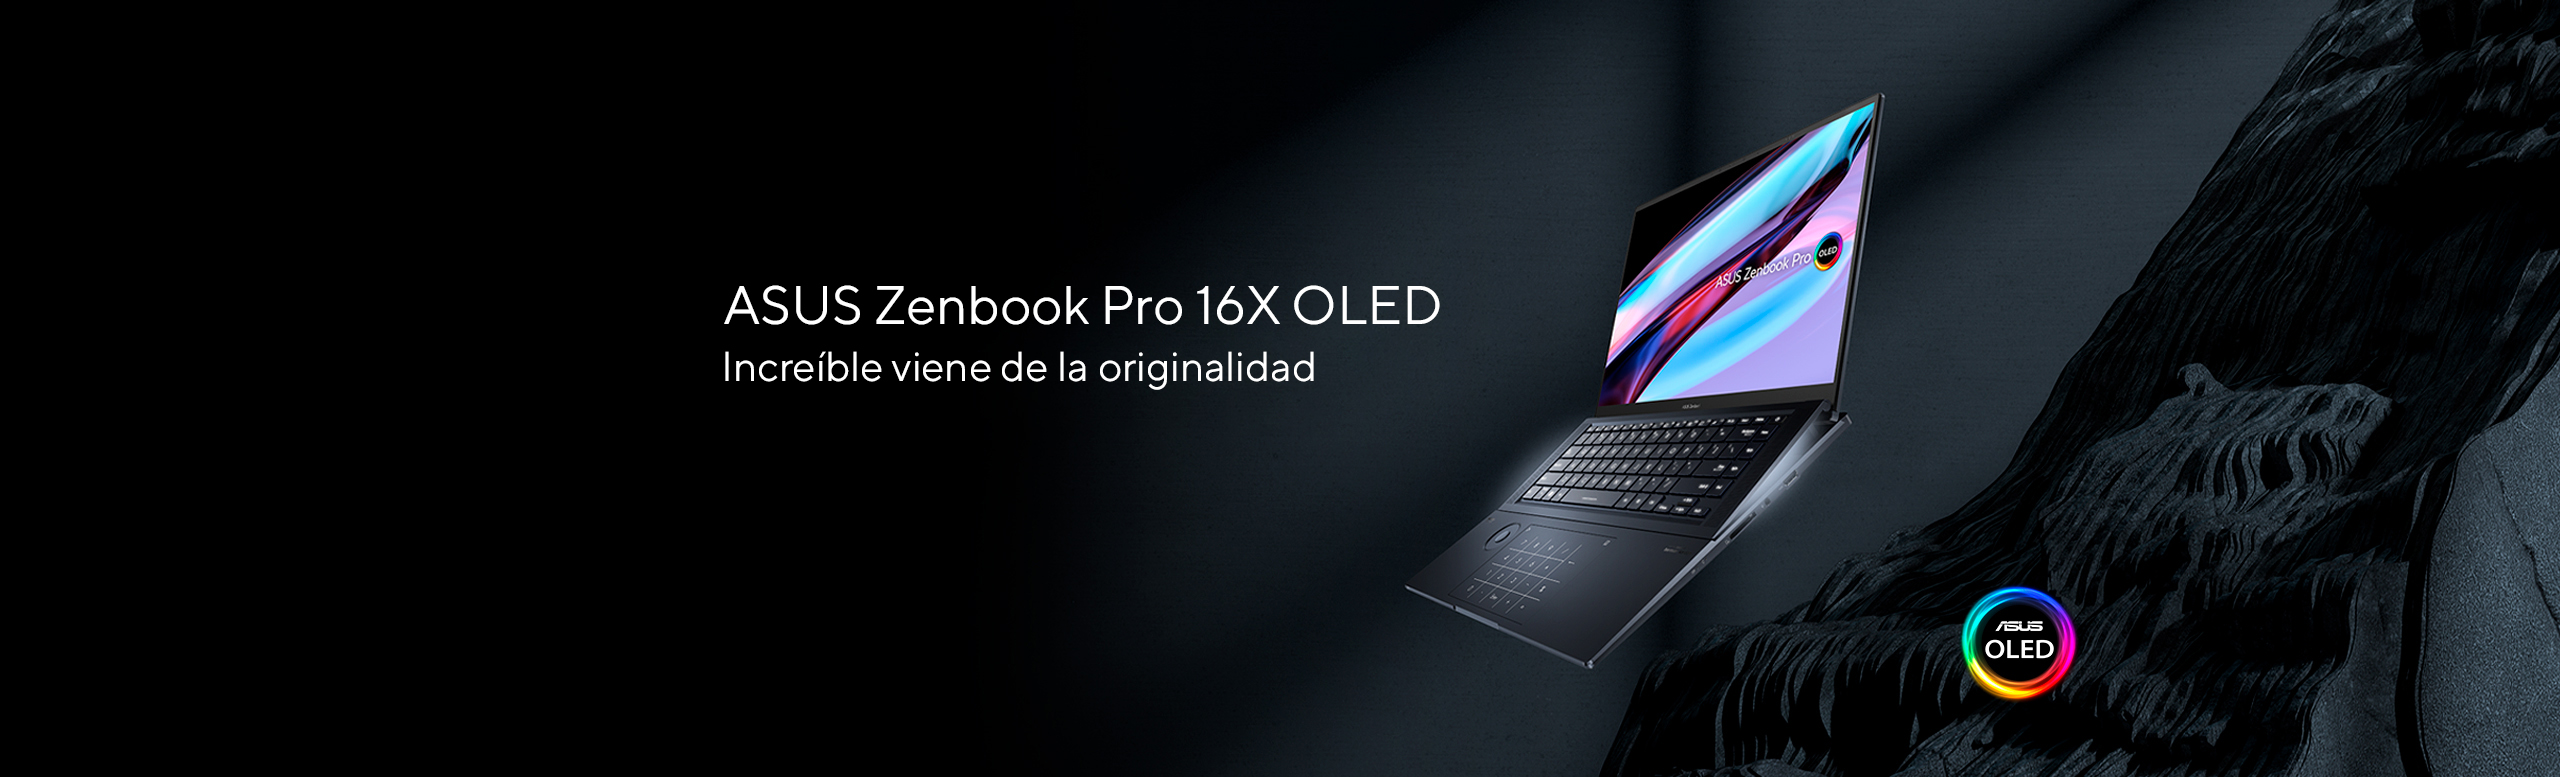 ASUS Zenbook Pro 16X OLED Lo increíble viene de la originalidad